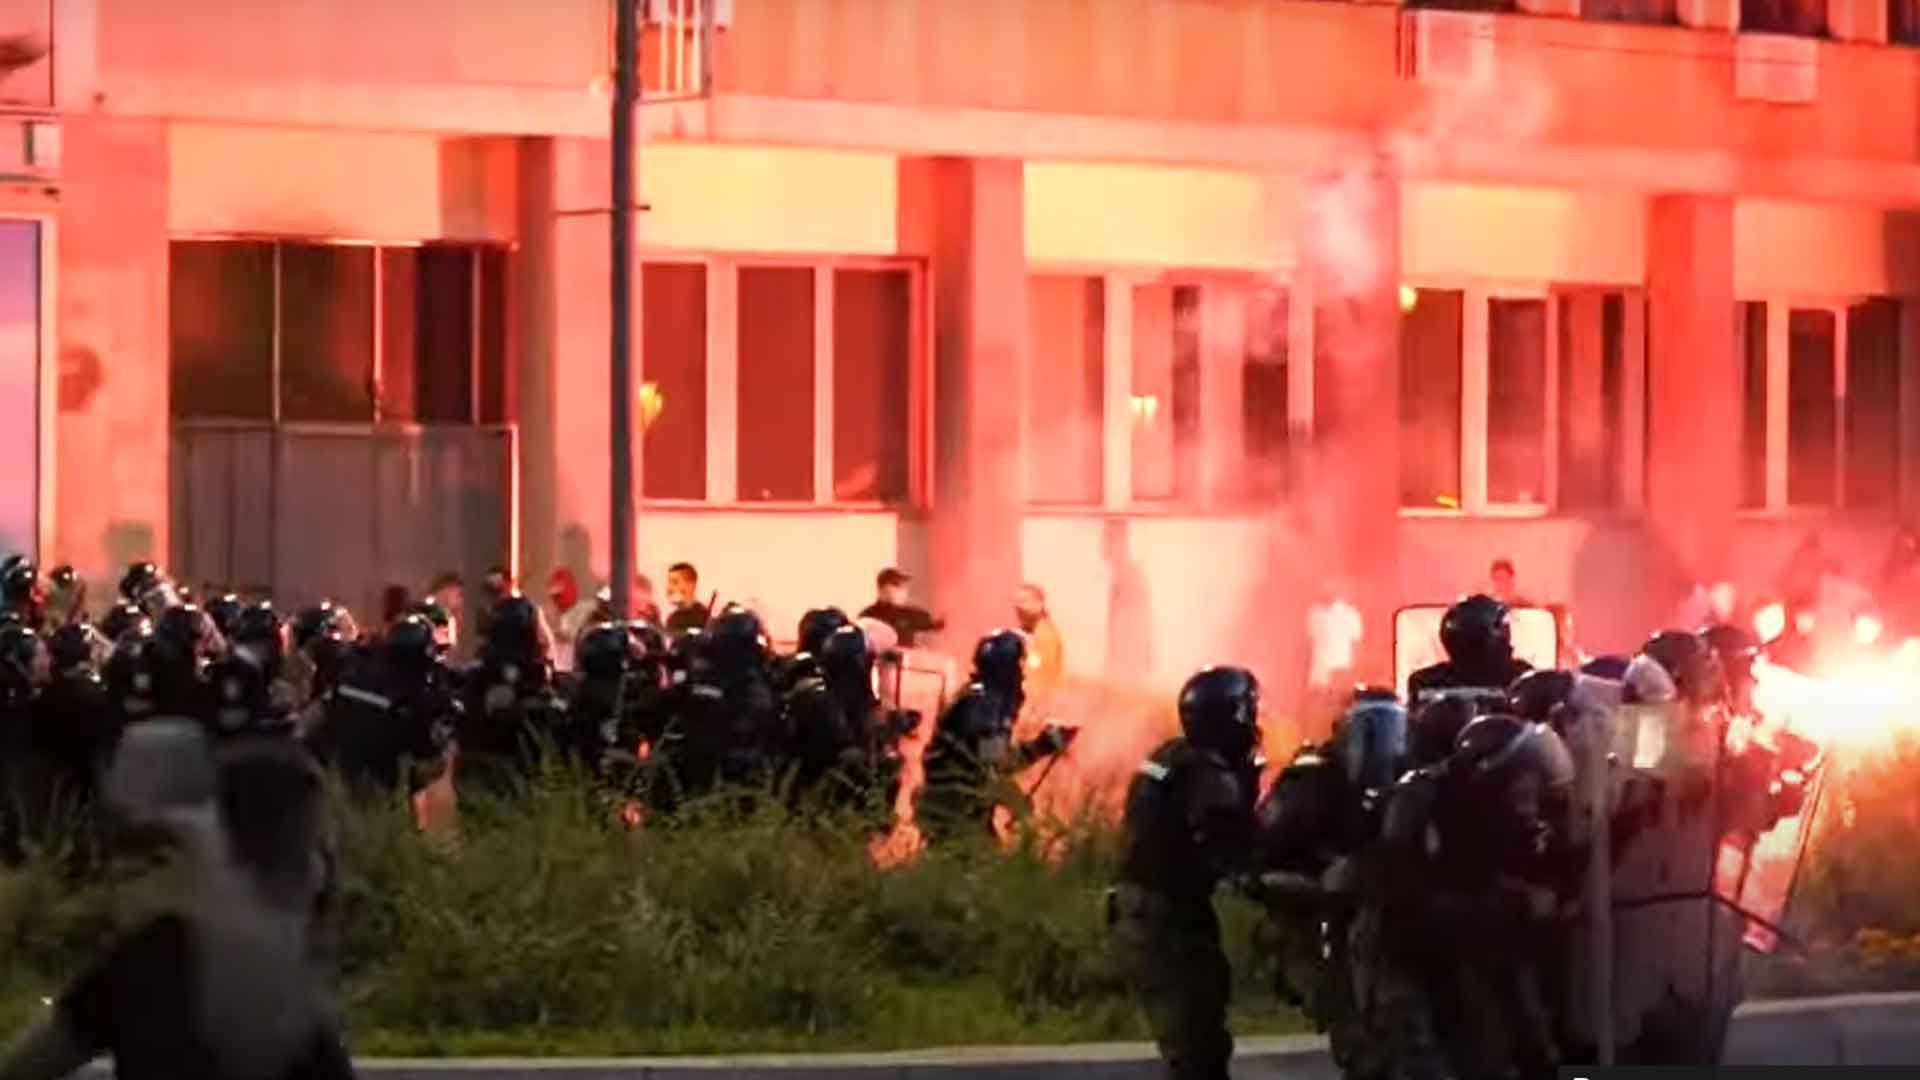 Dailystorm - Власти Сербии сообщили о 36 раненых демонстрантах и полицейских при беспорядках в Белграде